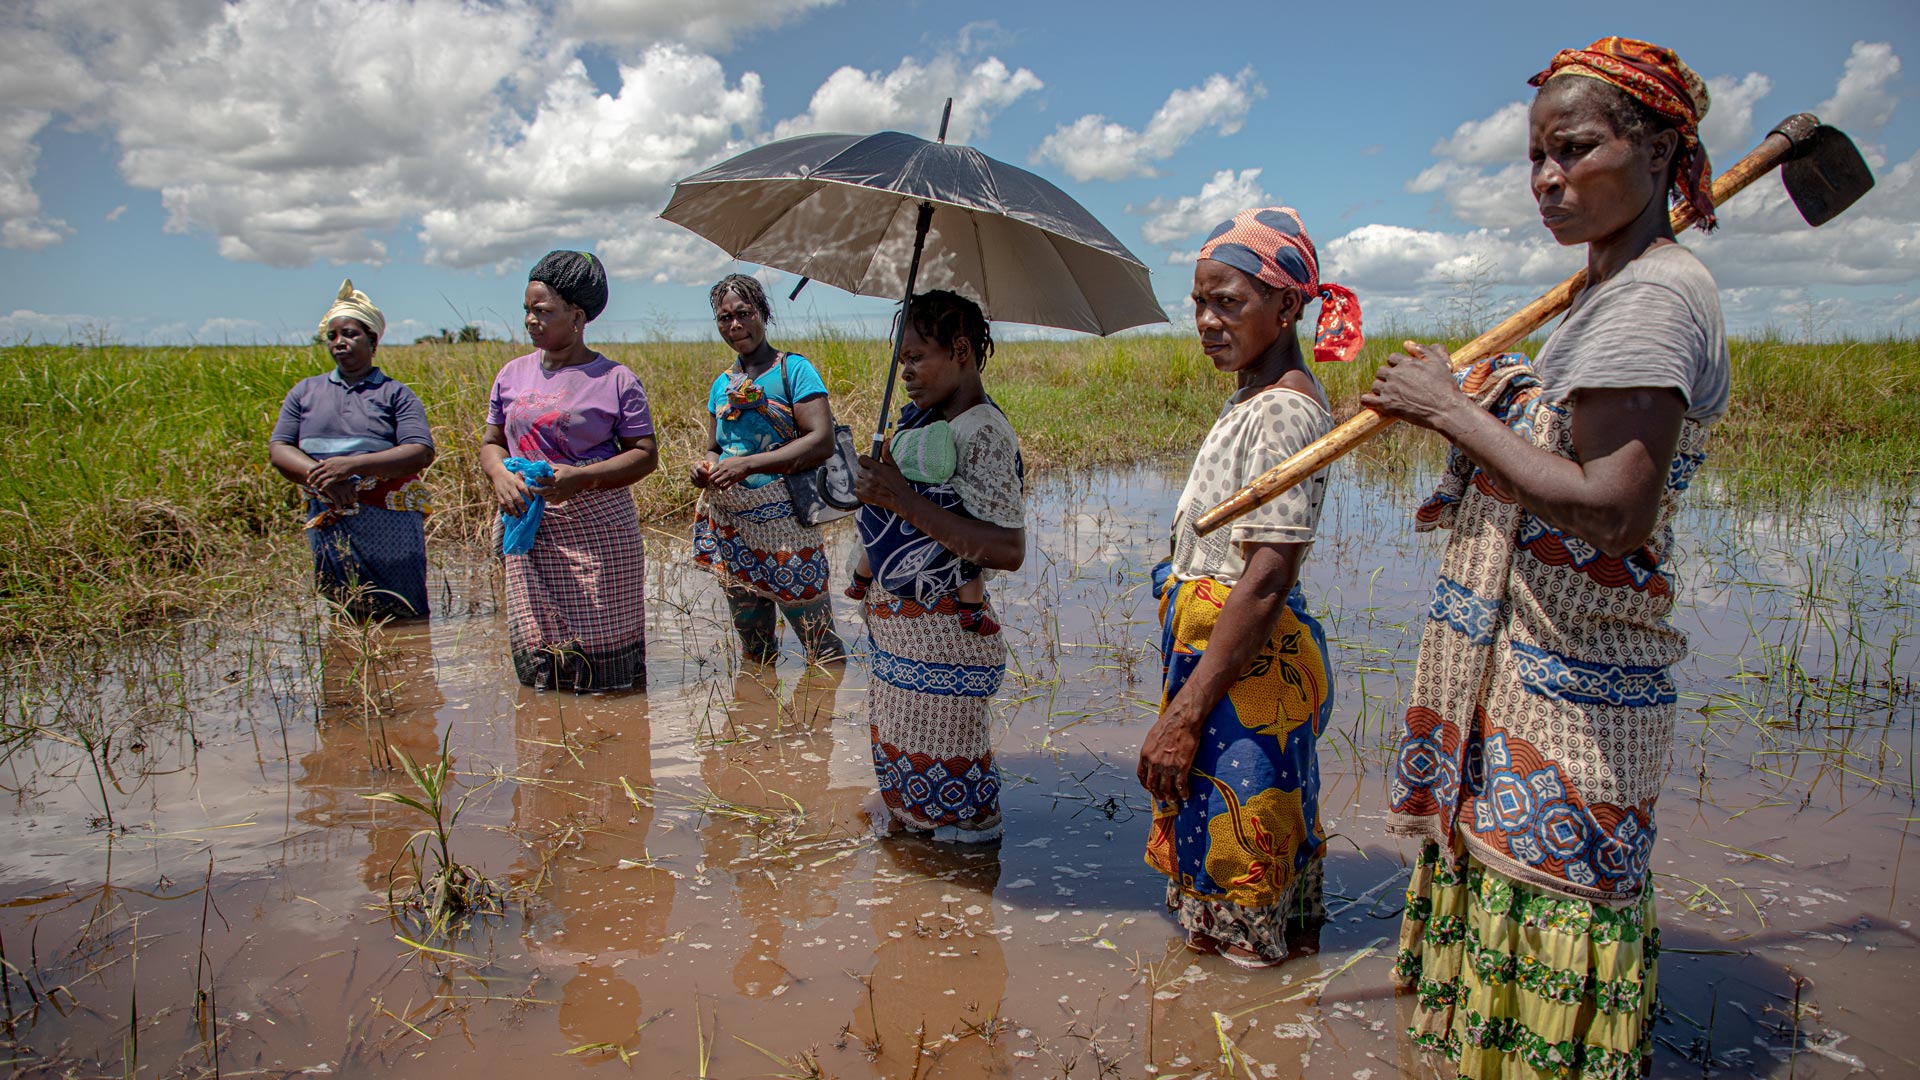 Mulheres e jovens no Sul Global estão sendo atingidos de maneira especialmente dura pelas mudanças climáticas. Foto: ActionAid